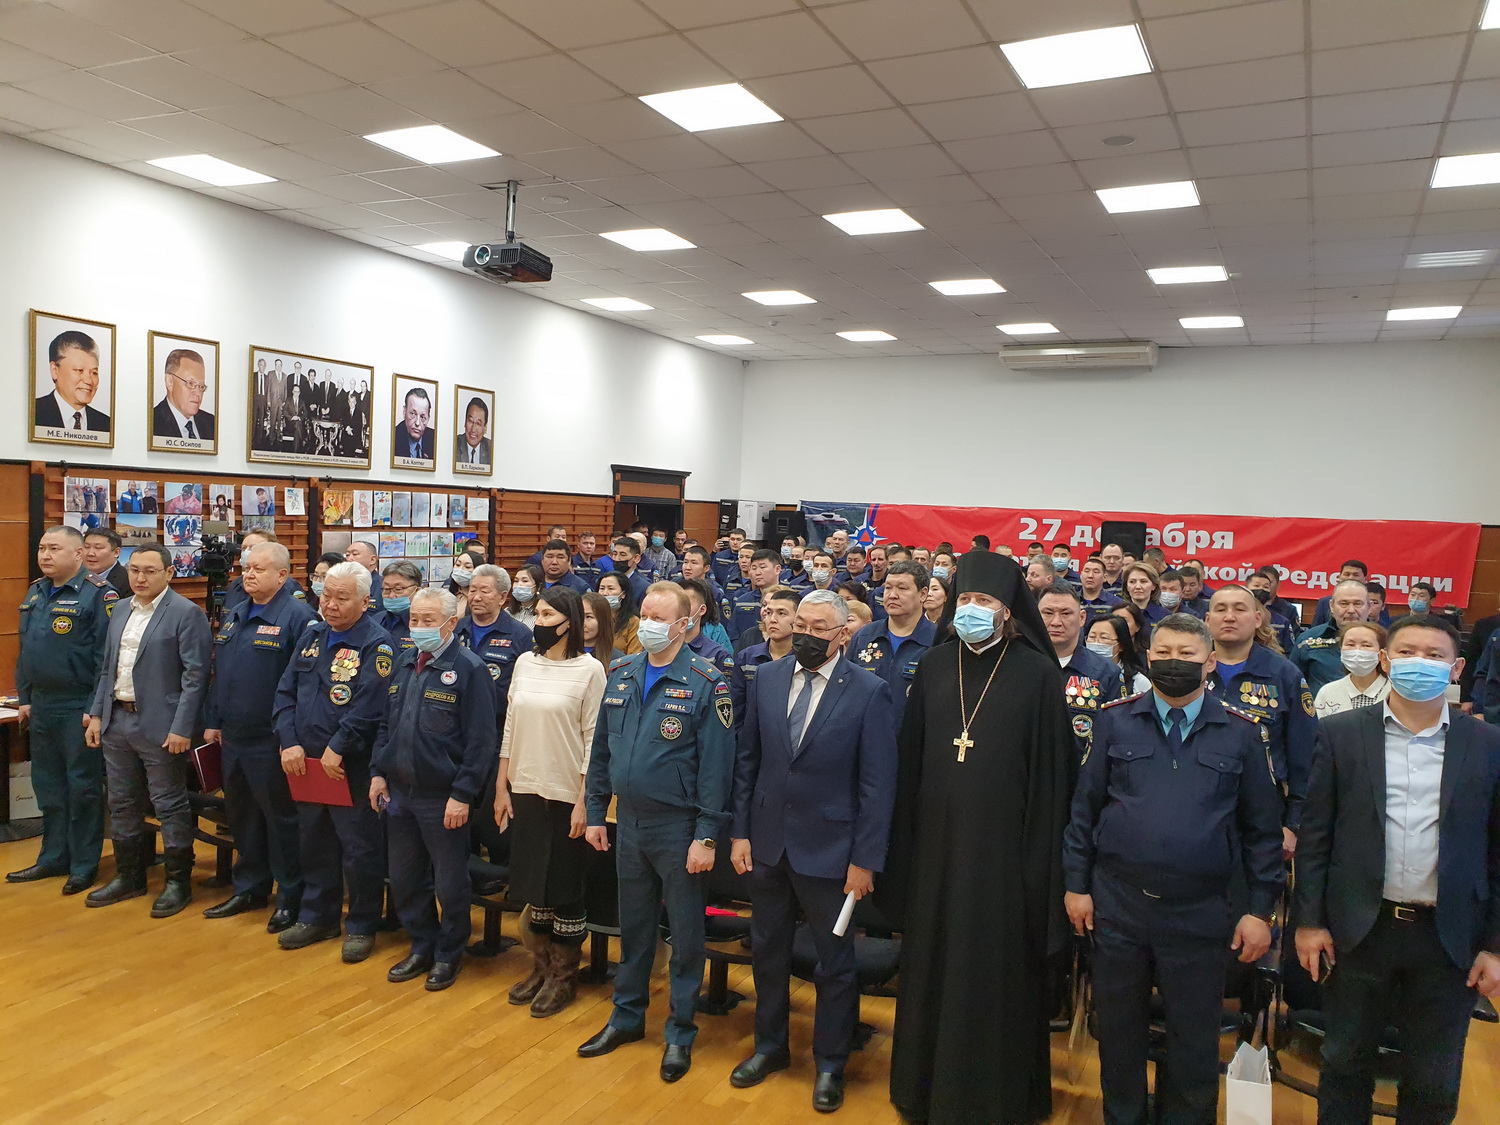 Награждение сотрудников Службы спасения состоялось в Якутии